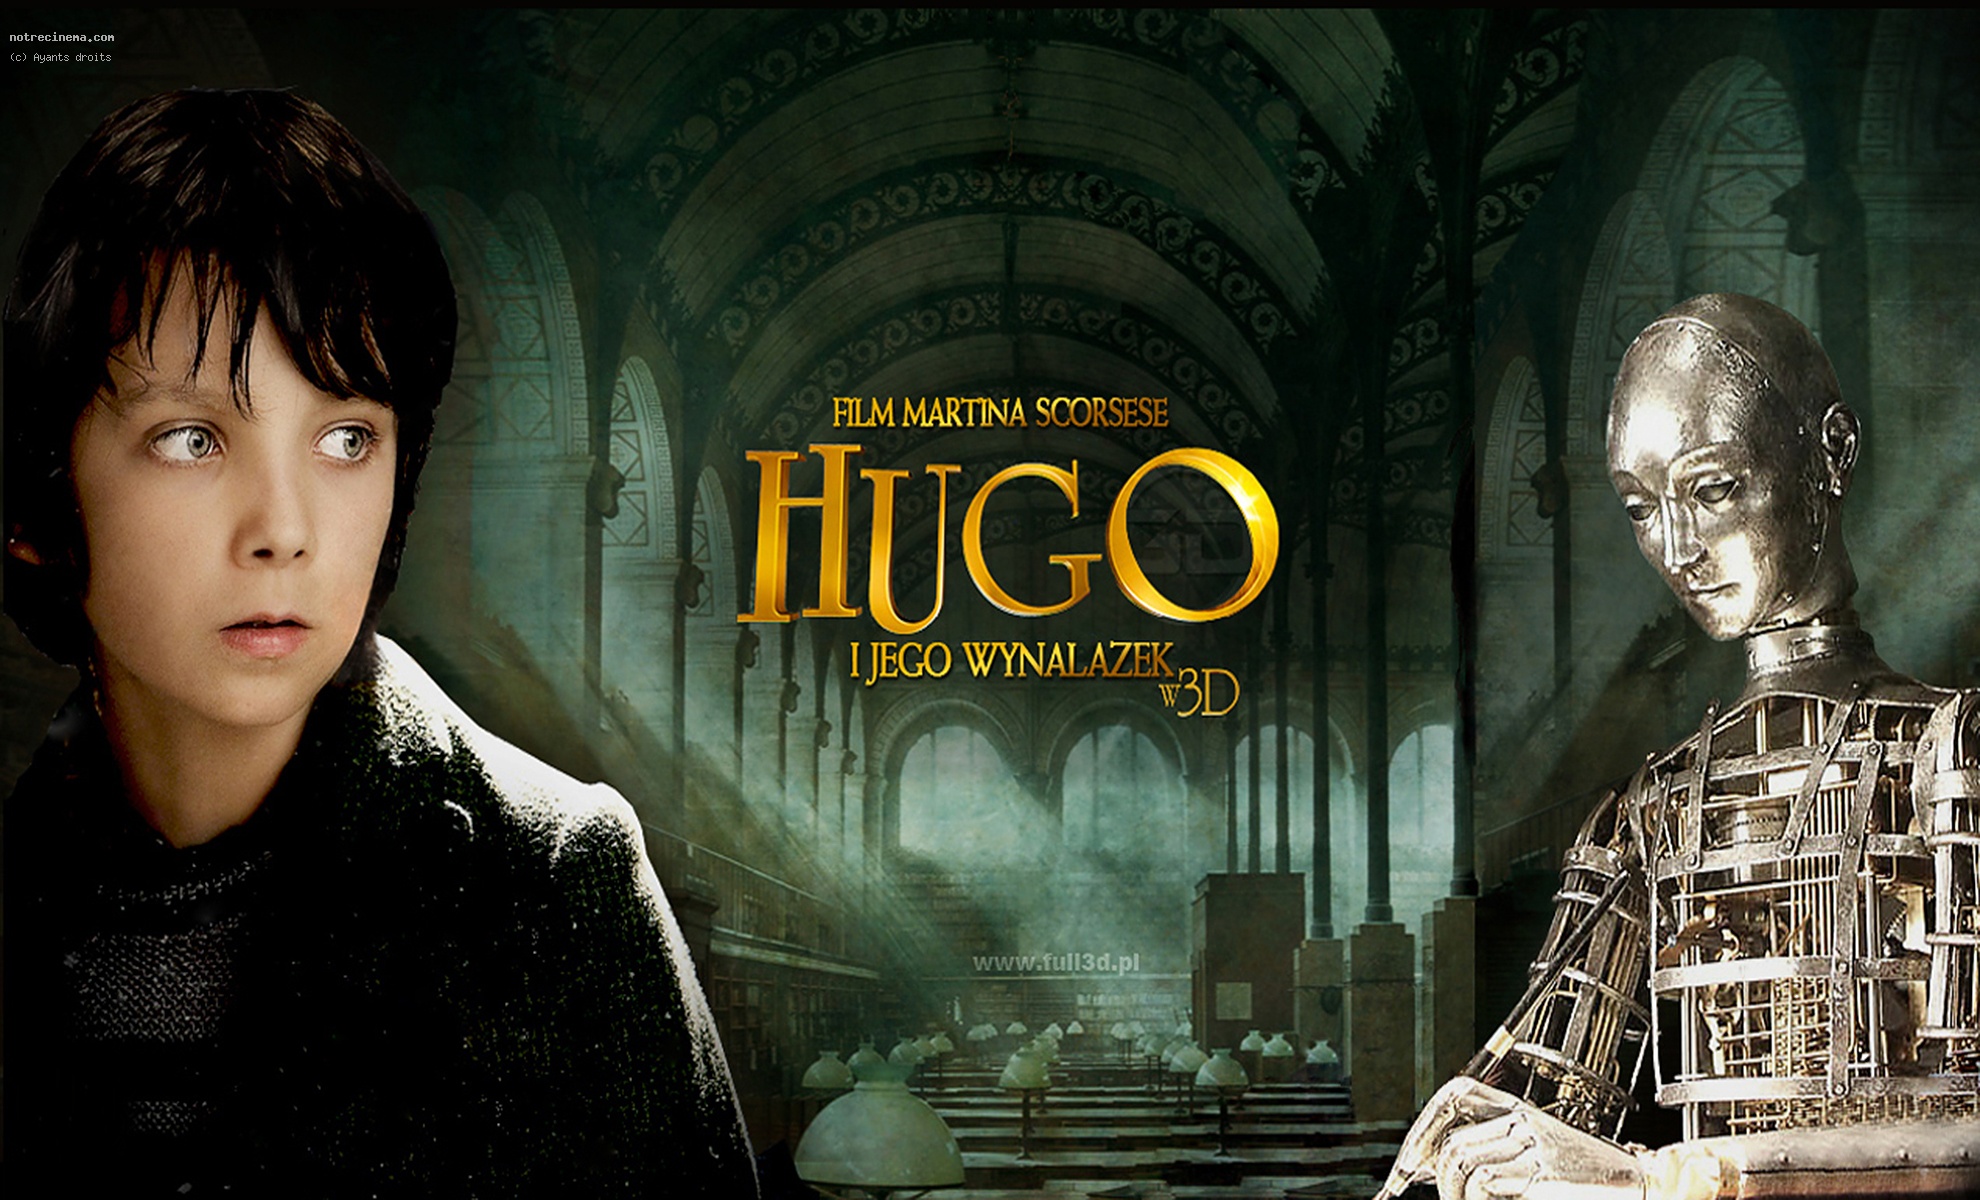 Hugo wallpaper, Movie, HQ Hugo pictureK Wallpaper 2019